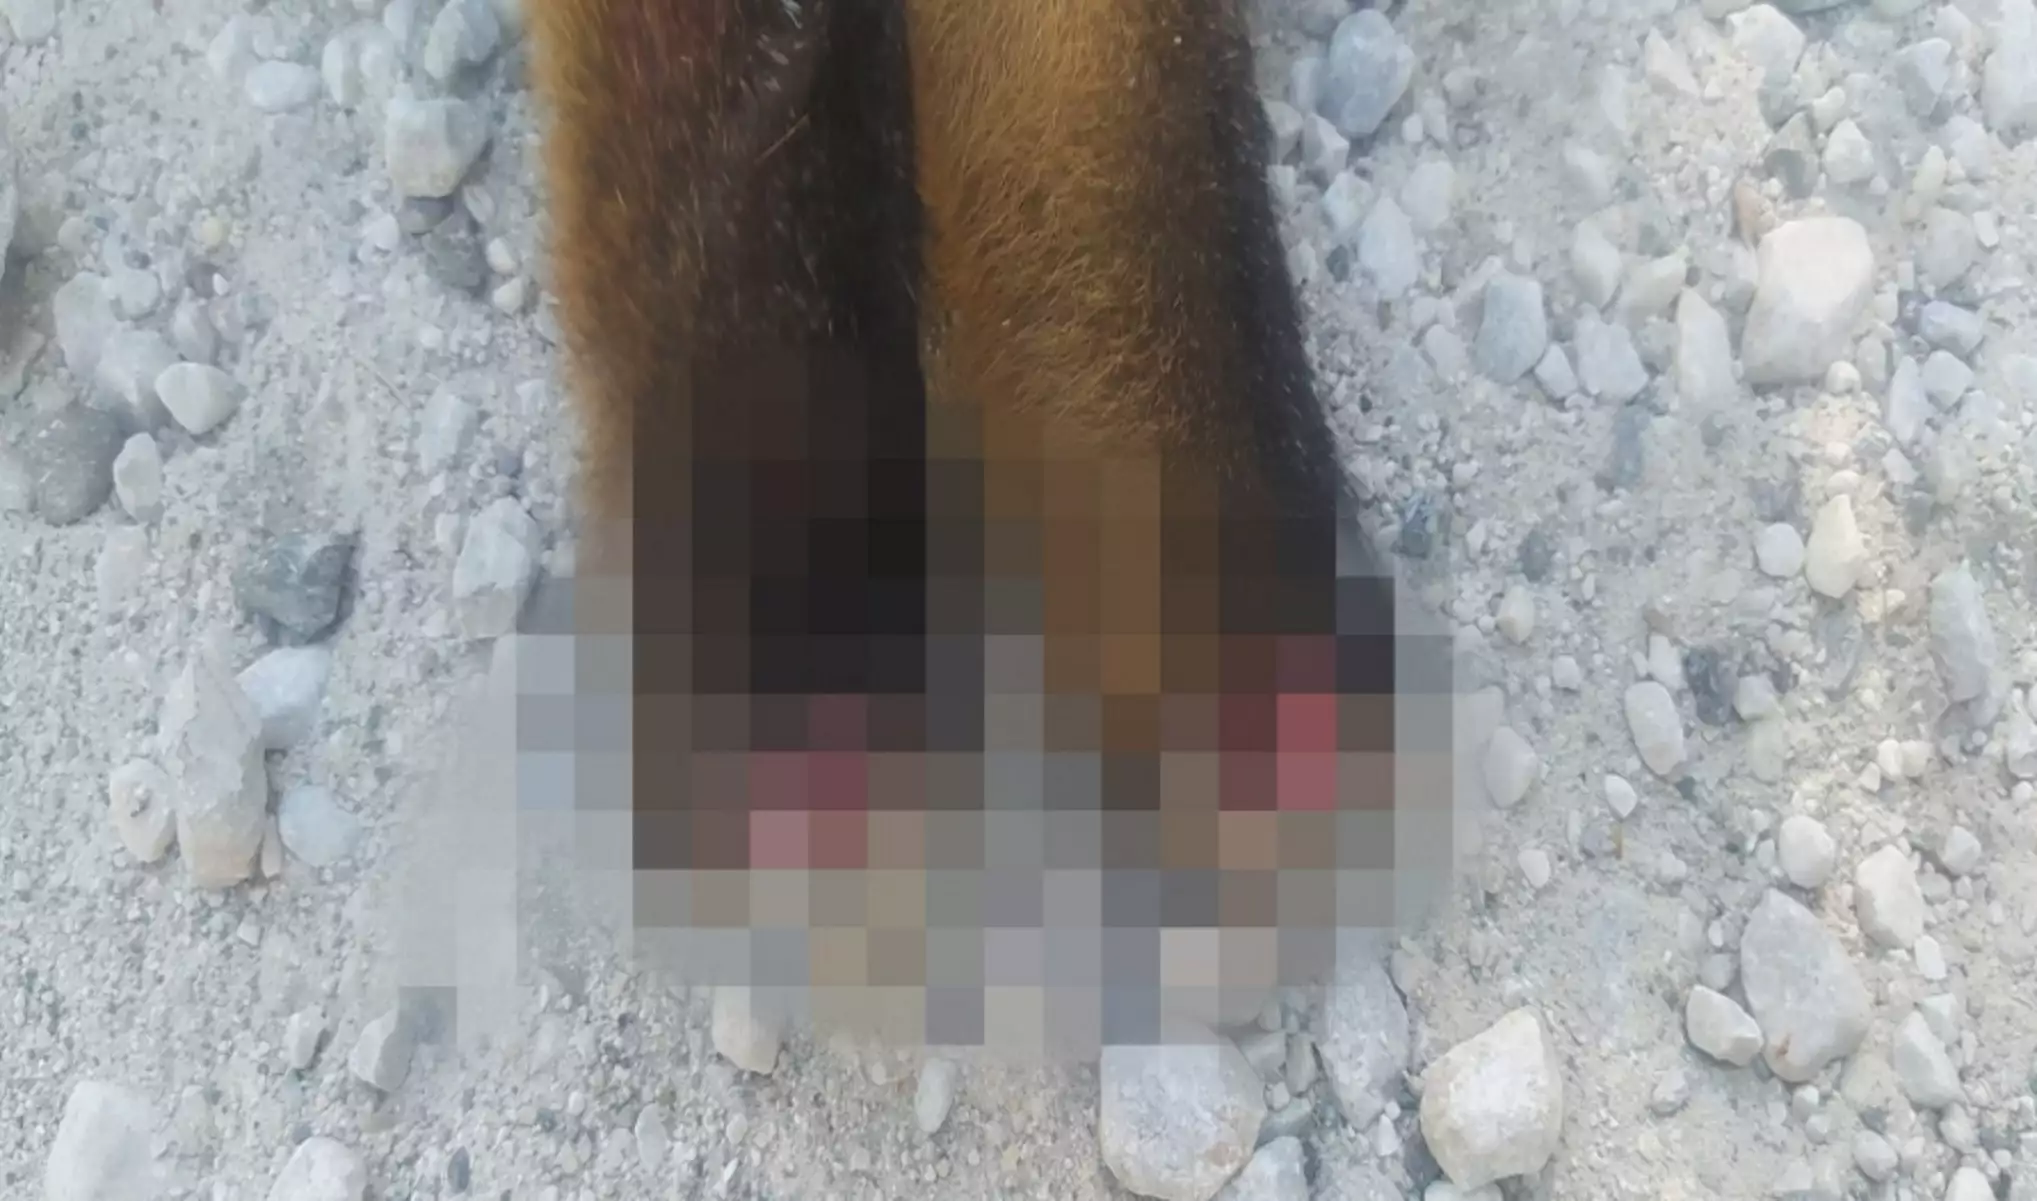 Καστοριά: Βασάνισαν και ακρωτηρίασαν αλεπού - Πέθανε από αιμορραγία - Προσοχή σκληρές εικόνες